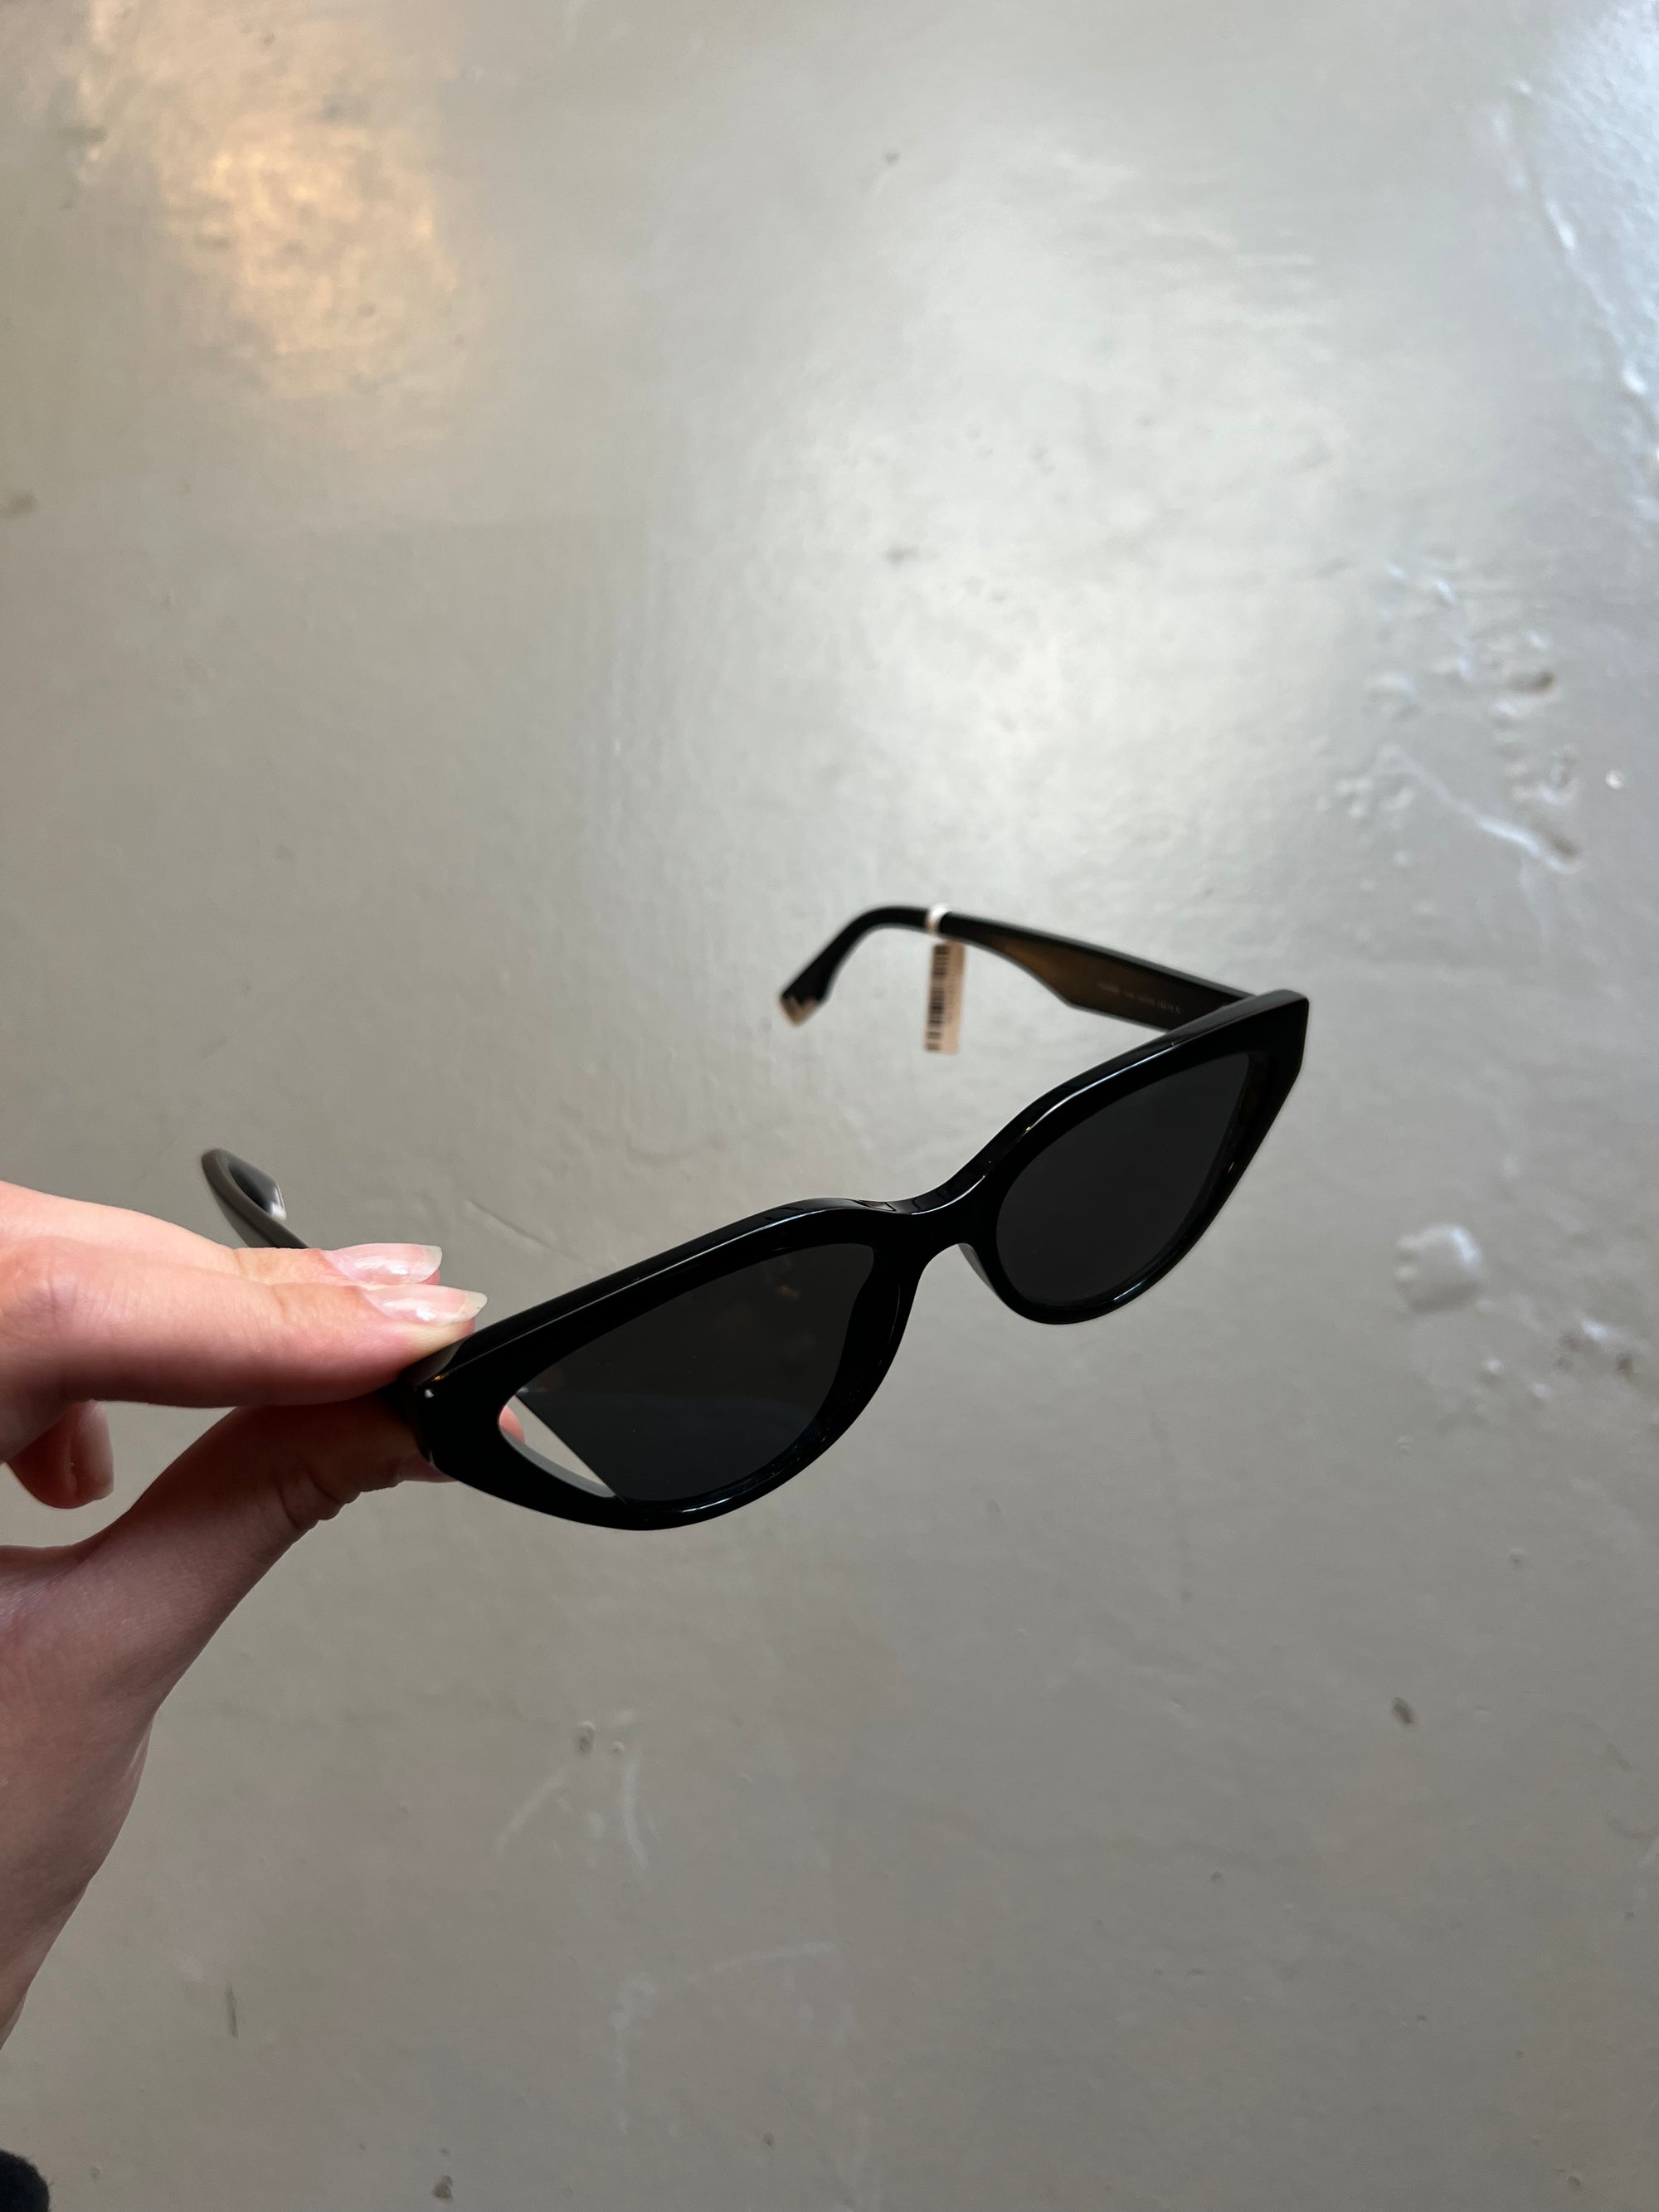 Produktbild von schwarzer Fendi Cat-Eye Sonnenbrille vor grauem Hintergrund.